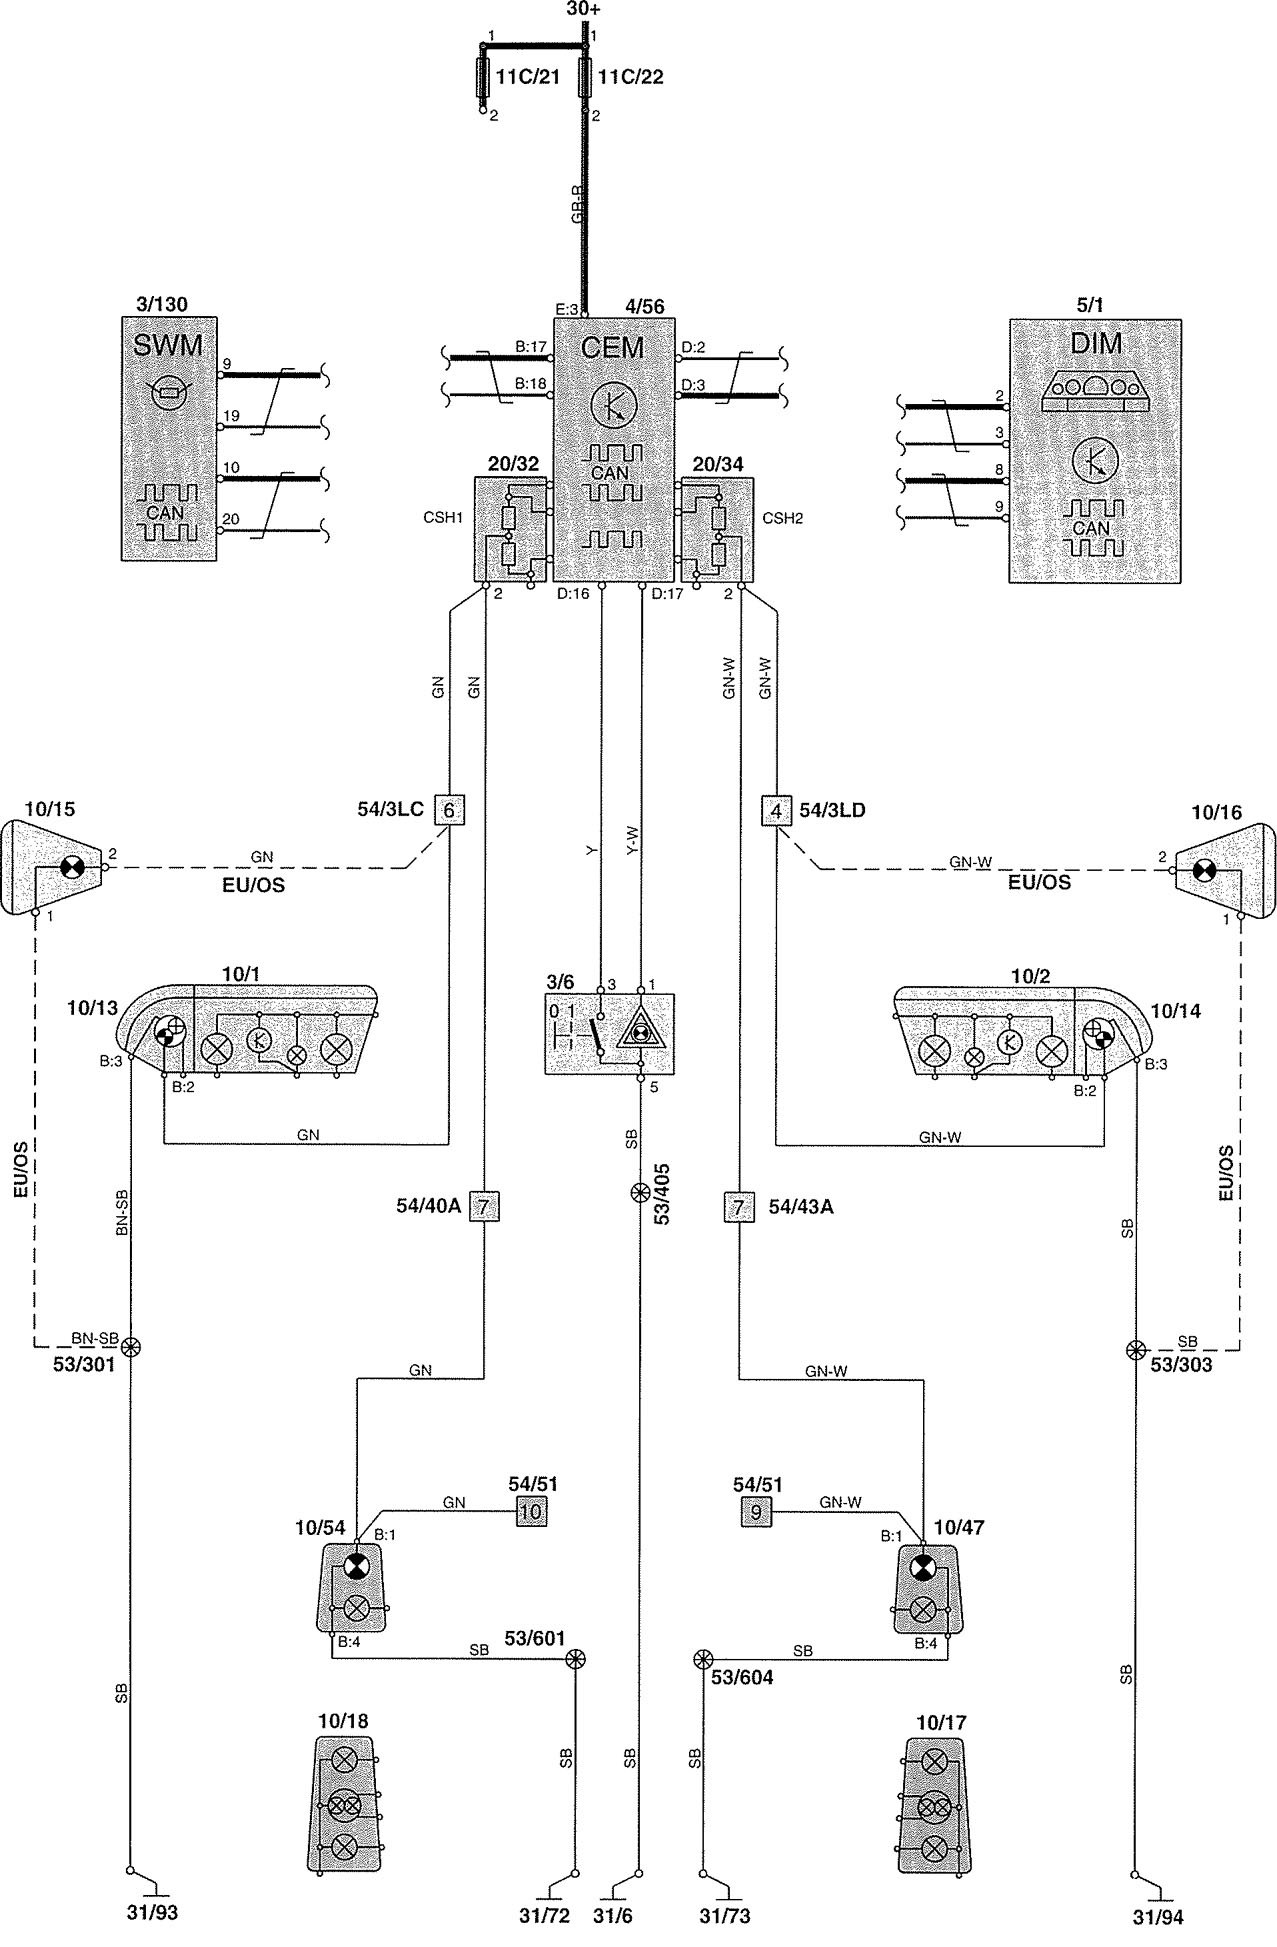 2002 volvo v70 xc wiring diagram